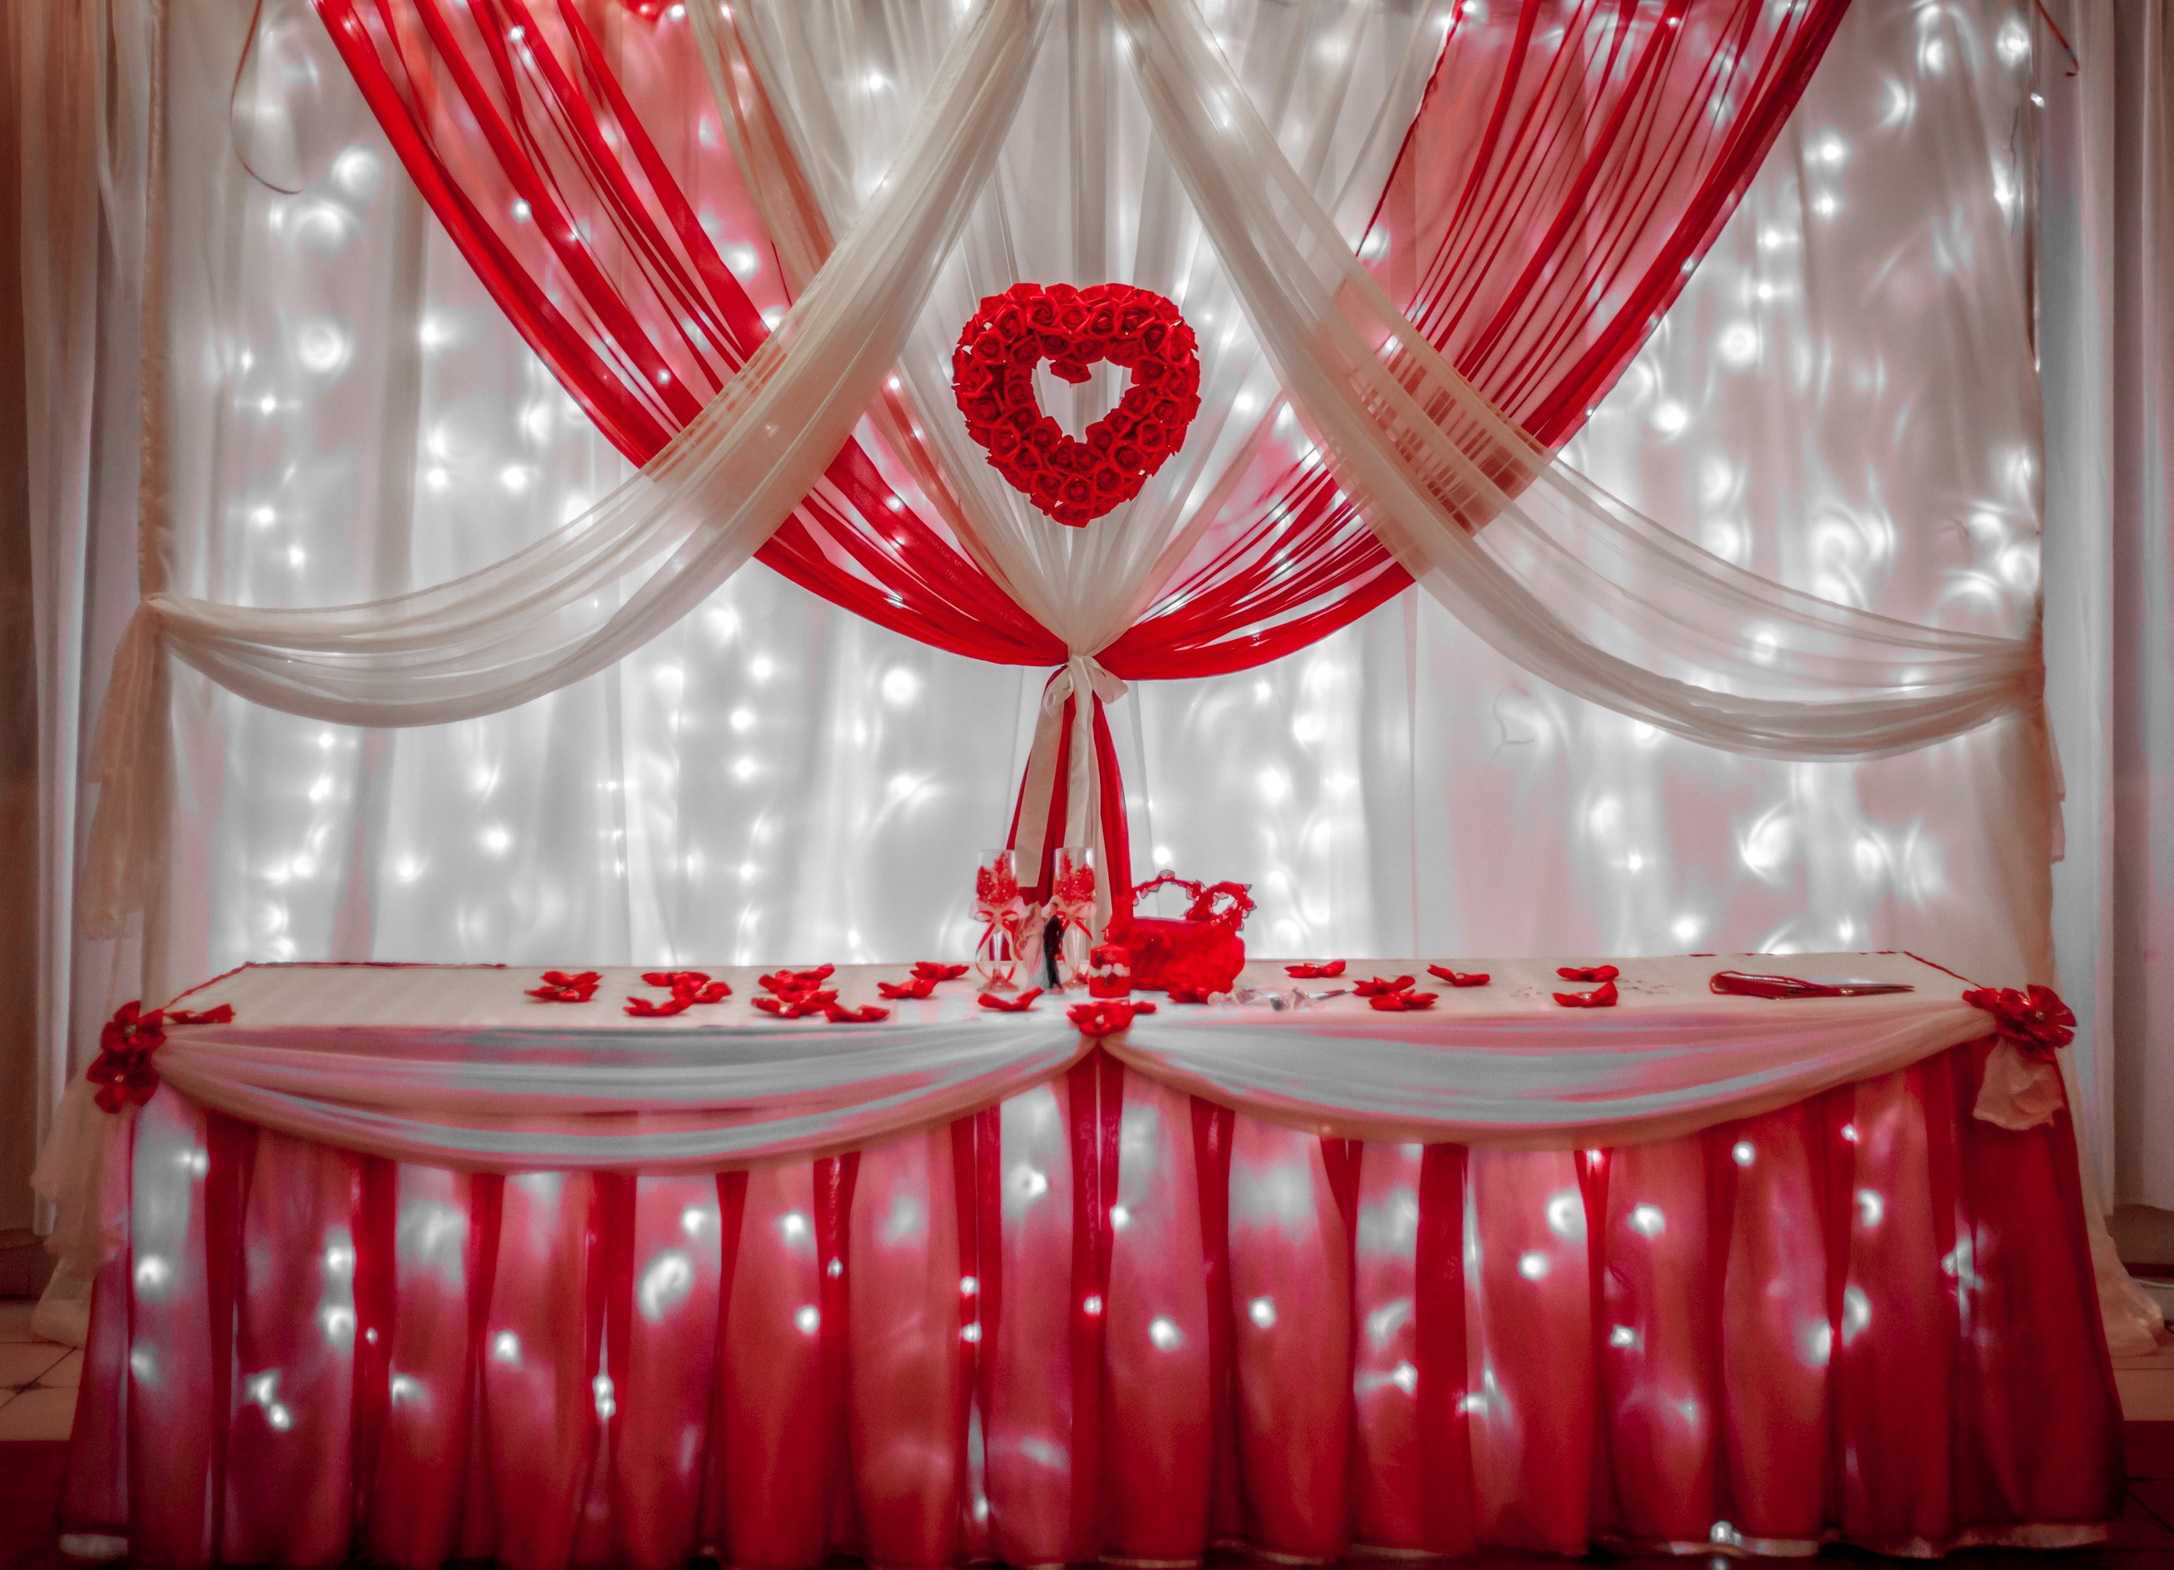 Бело-красная свадьба: украшение зала платье невесты и образ жениха примеры оформления с фото